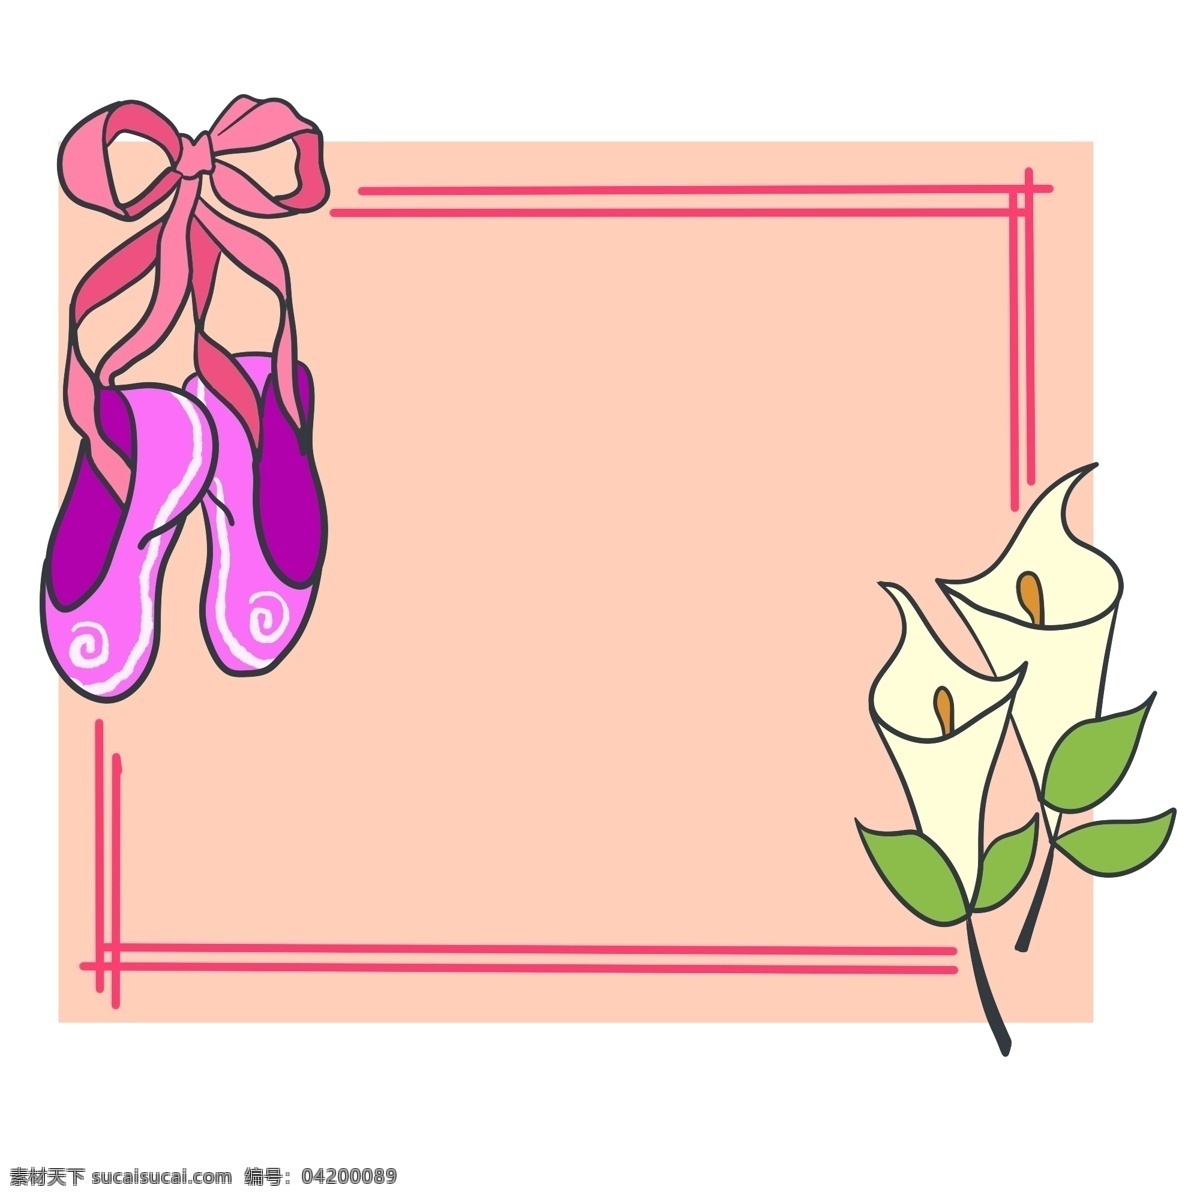 紫色 舞鞋 边框 装饰 紫色的舞鞋 舞鞋装饰边框 肉粉色边框 花朵 花卉 植物 花枝边框 卡通边框装饰